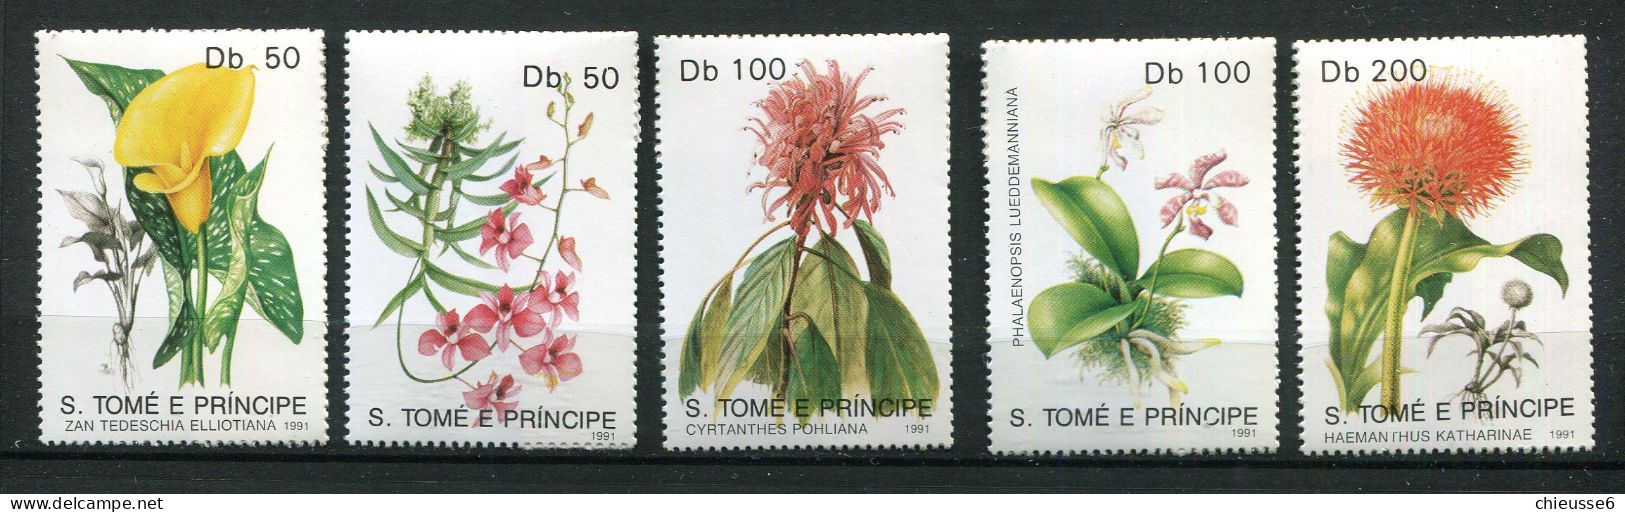 S. Tome  ** N° 1052 à 1056 - Fleurs - Sao Tomé E Principe